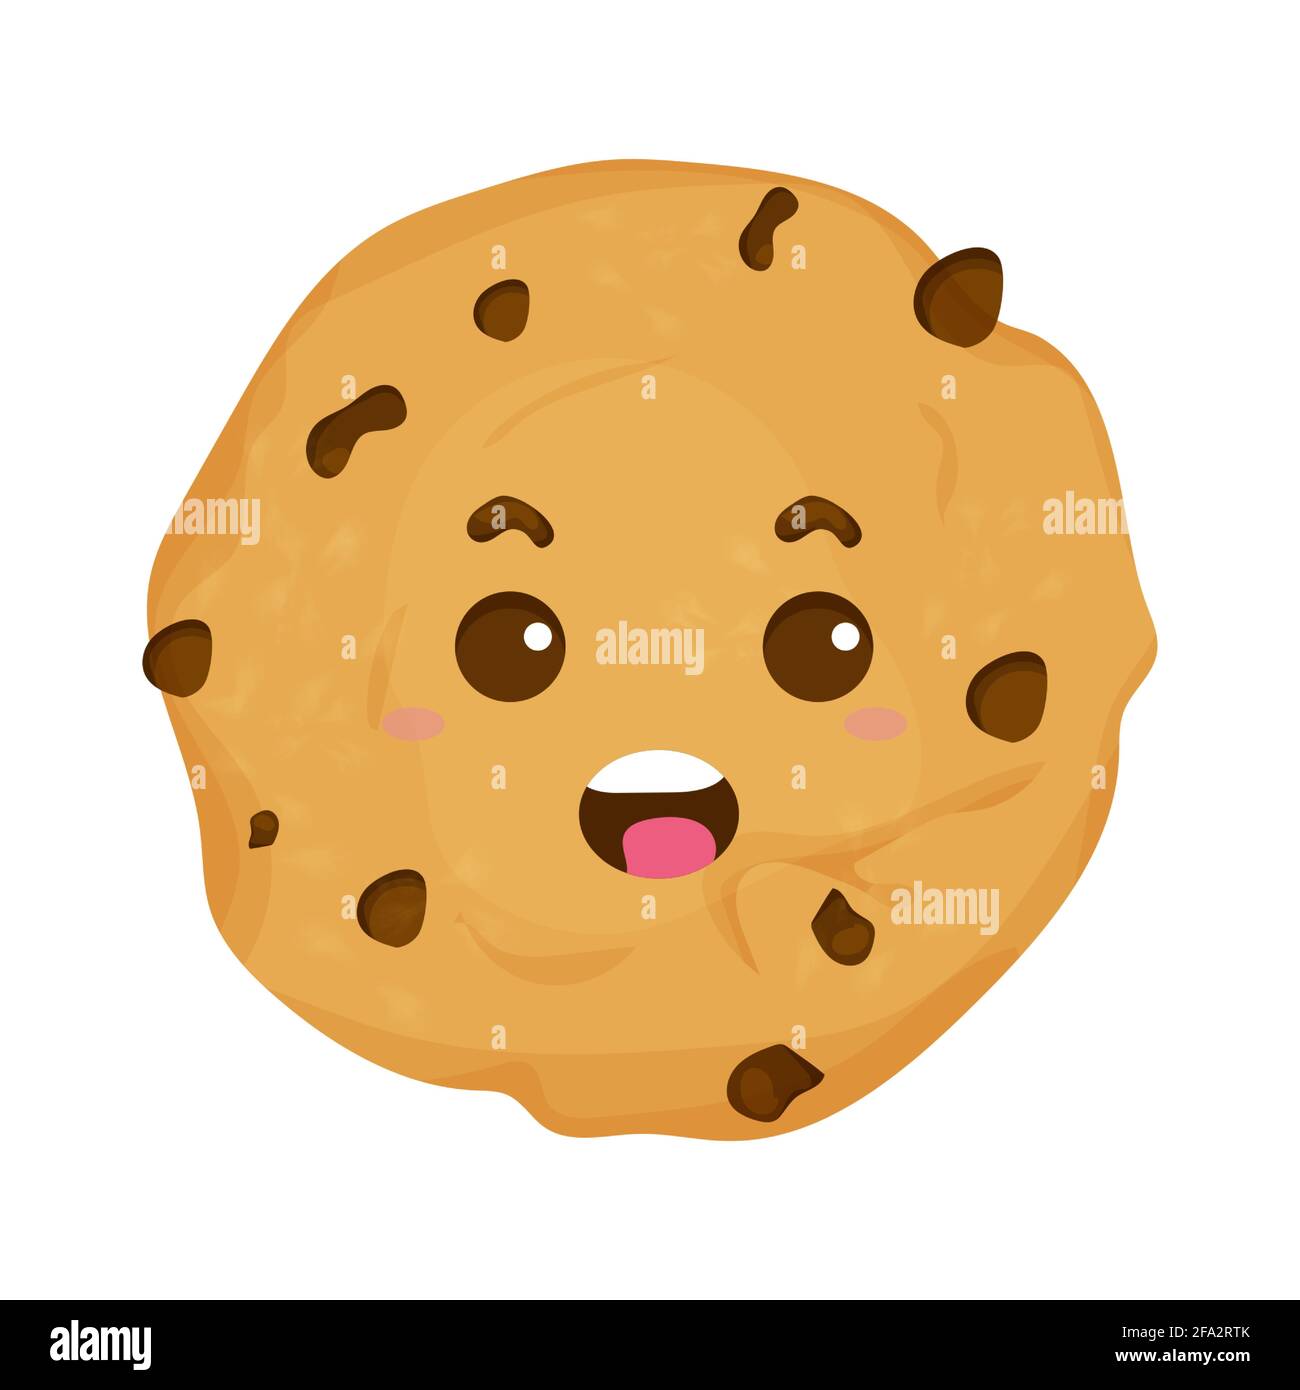 Carino, cookie kawaii comico, carattere emotivo in stile cartoon isolato su sfondo bianco. Dessert con patatine al cioccolato. . Illustrazione vettoriale Illustrazione Vettoriale